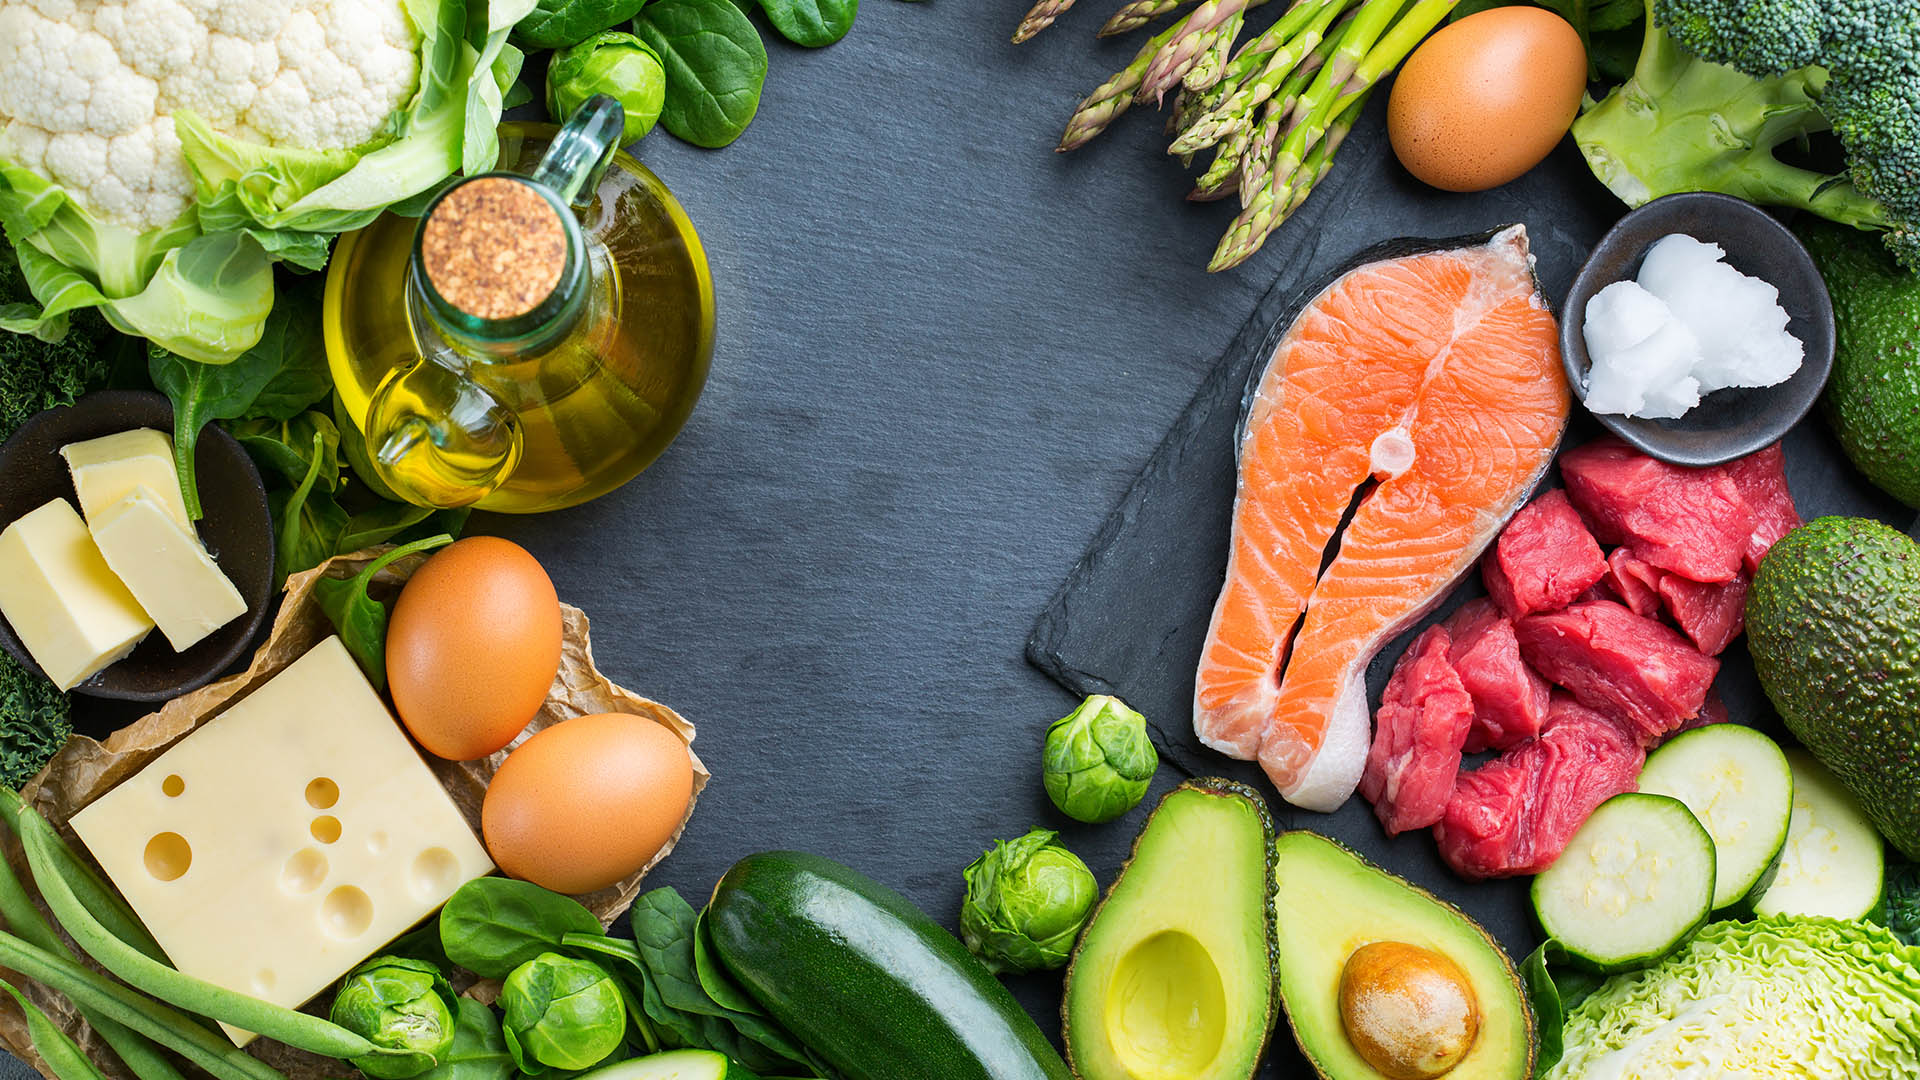 La dieta cetogénica,  baja en hidratos de carbono y grasas, lleva al cuerpo a consumir la grasa acumulada como fuente de energía (Shutterstock)